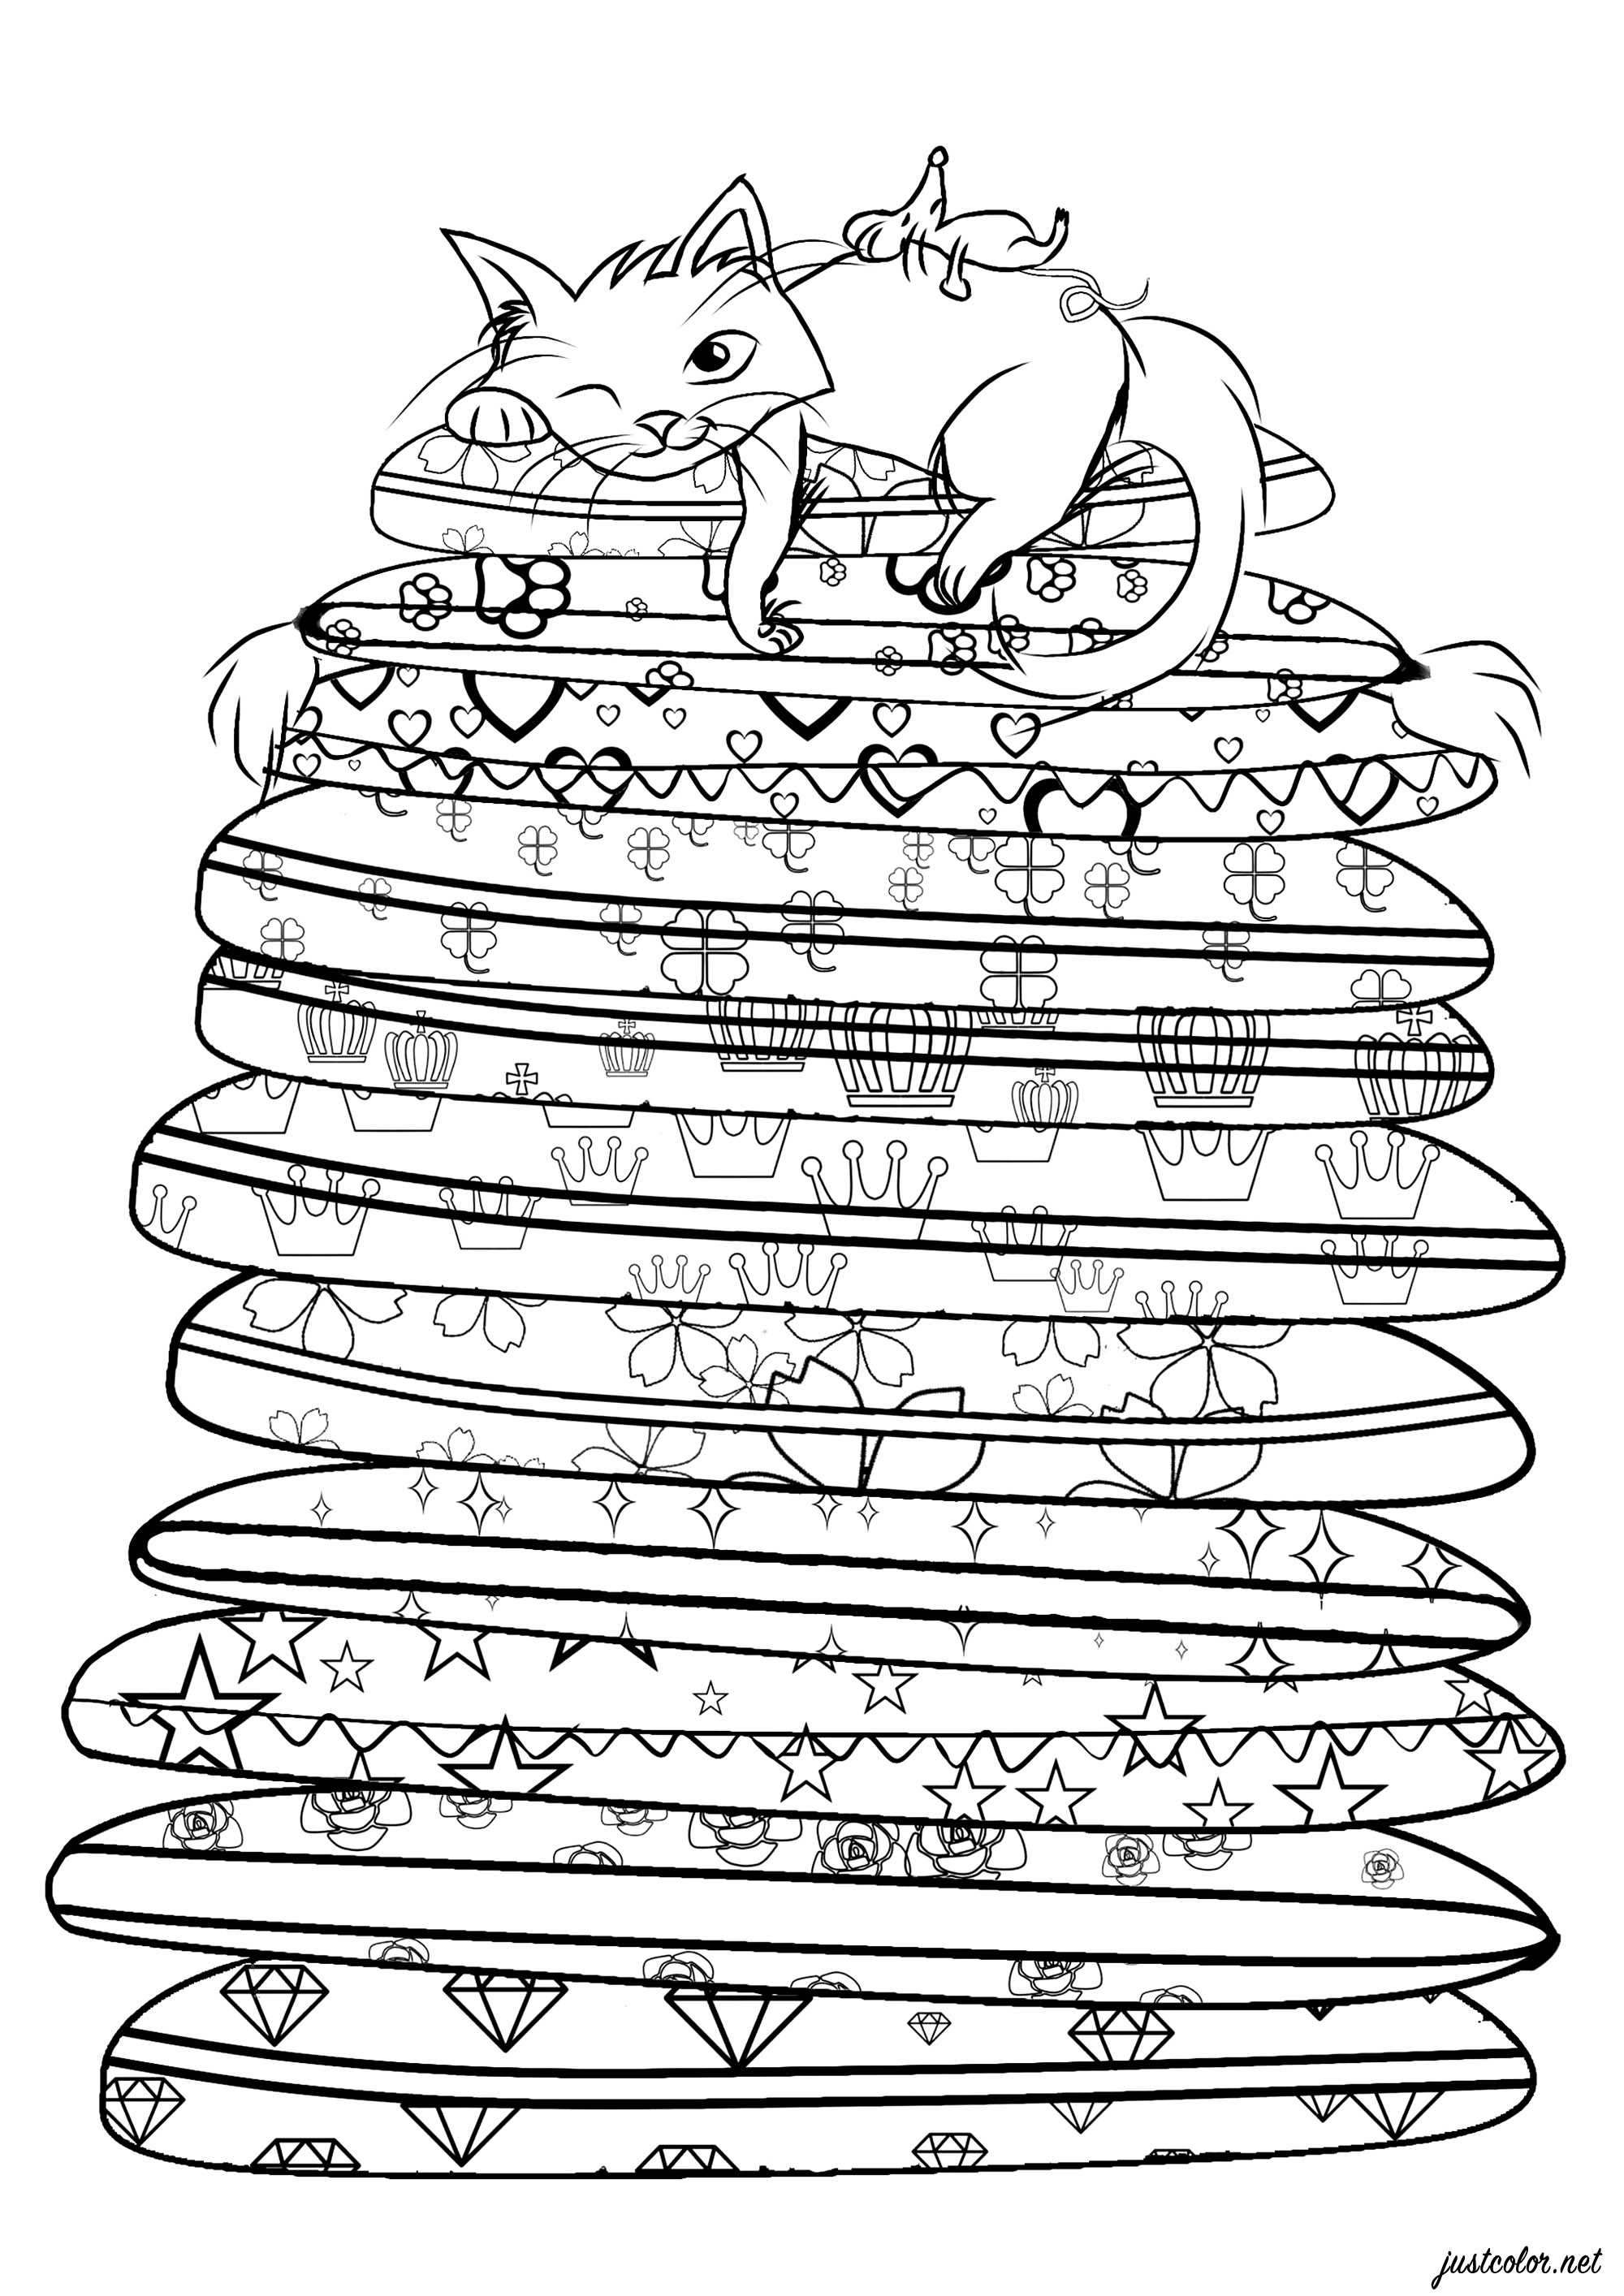 Gato descansando sobre una pila de cojines con varios dibujos para colorear, Artista : Alicia